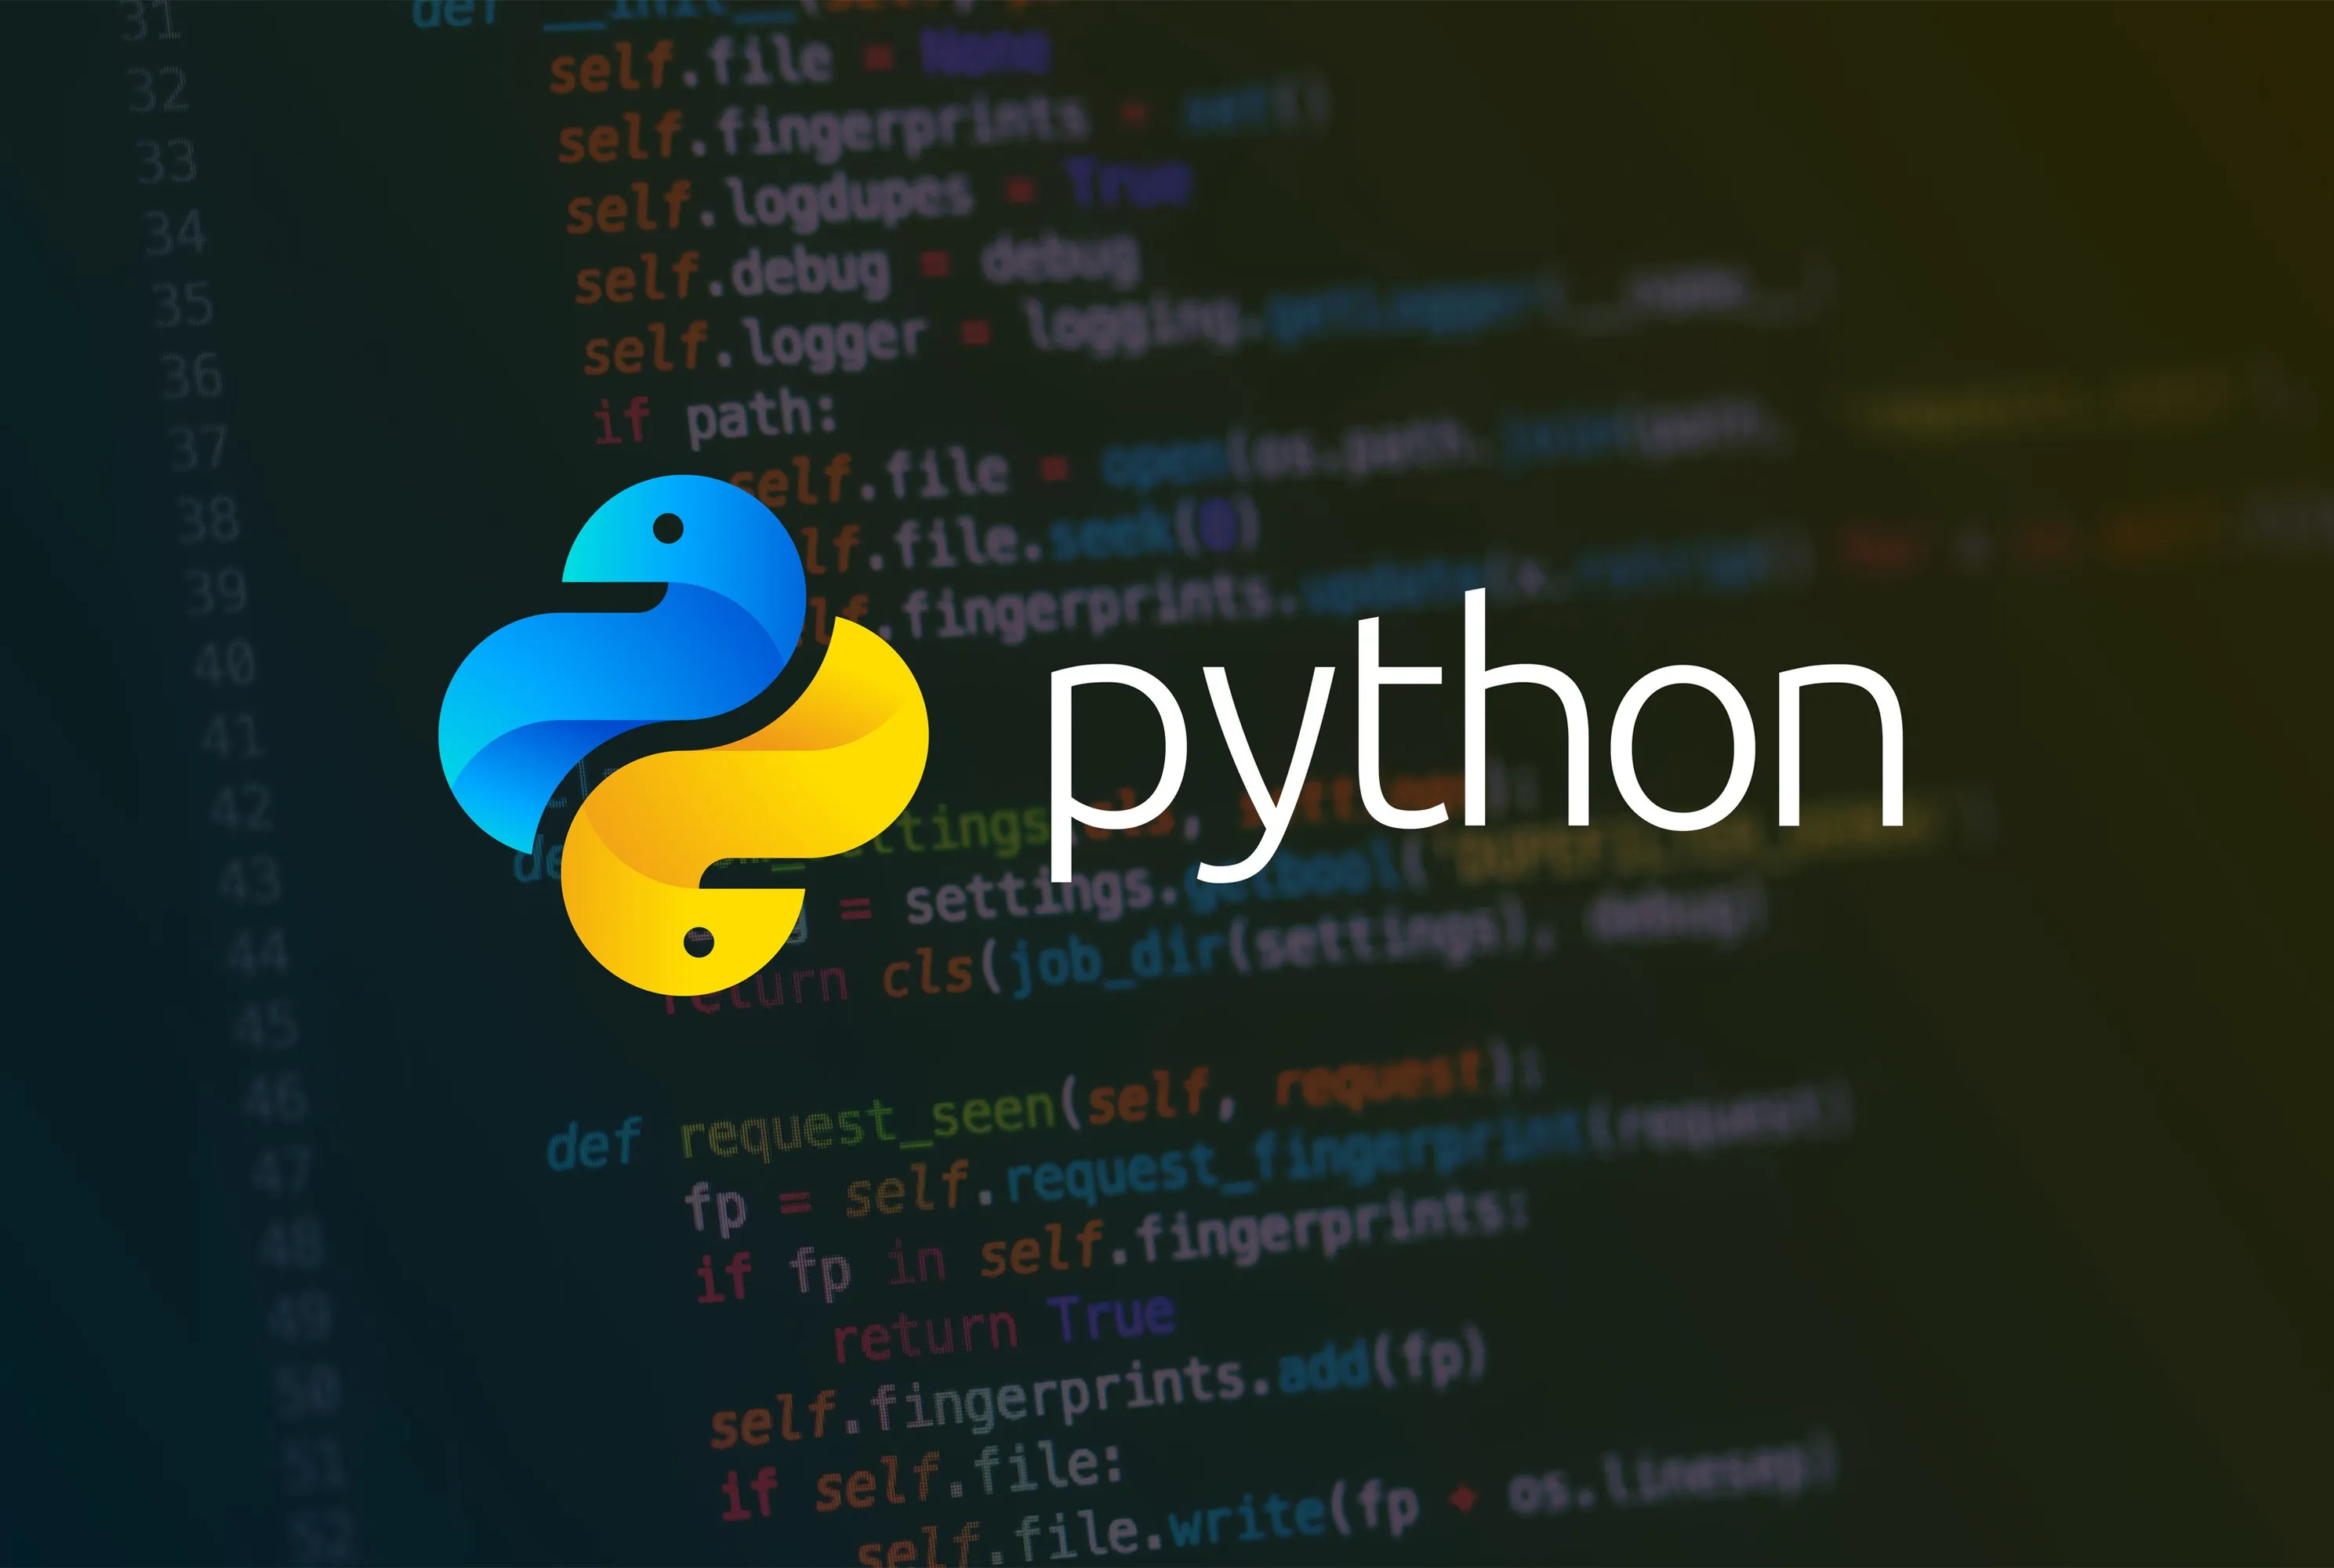 Reply python. Питон язык программирования. Питон язык программирования Эстетика. Питон программирование язык программирования. Питон язык программирования лого.